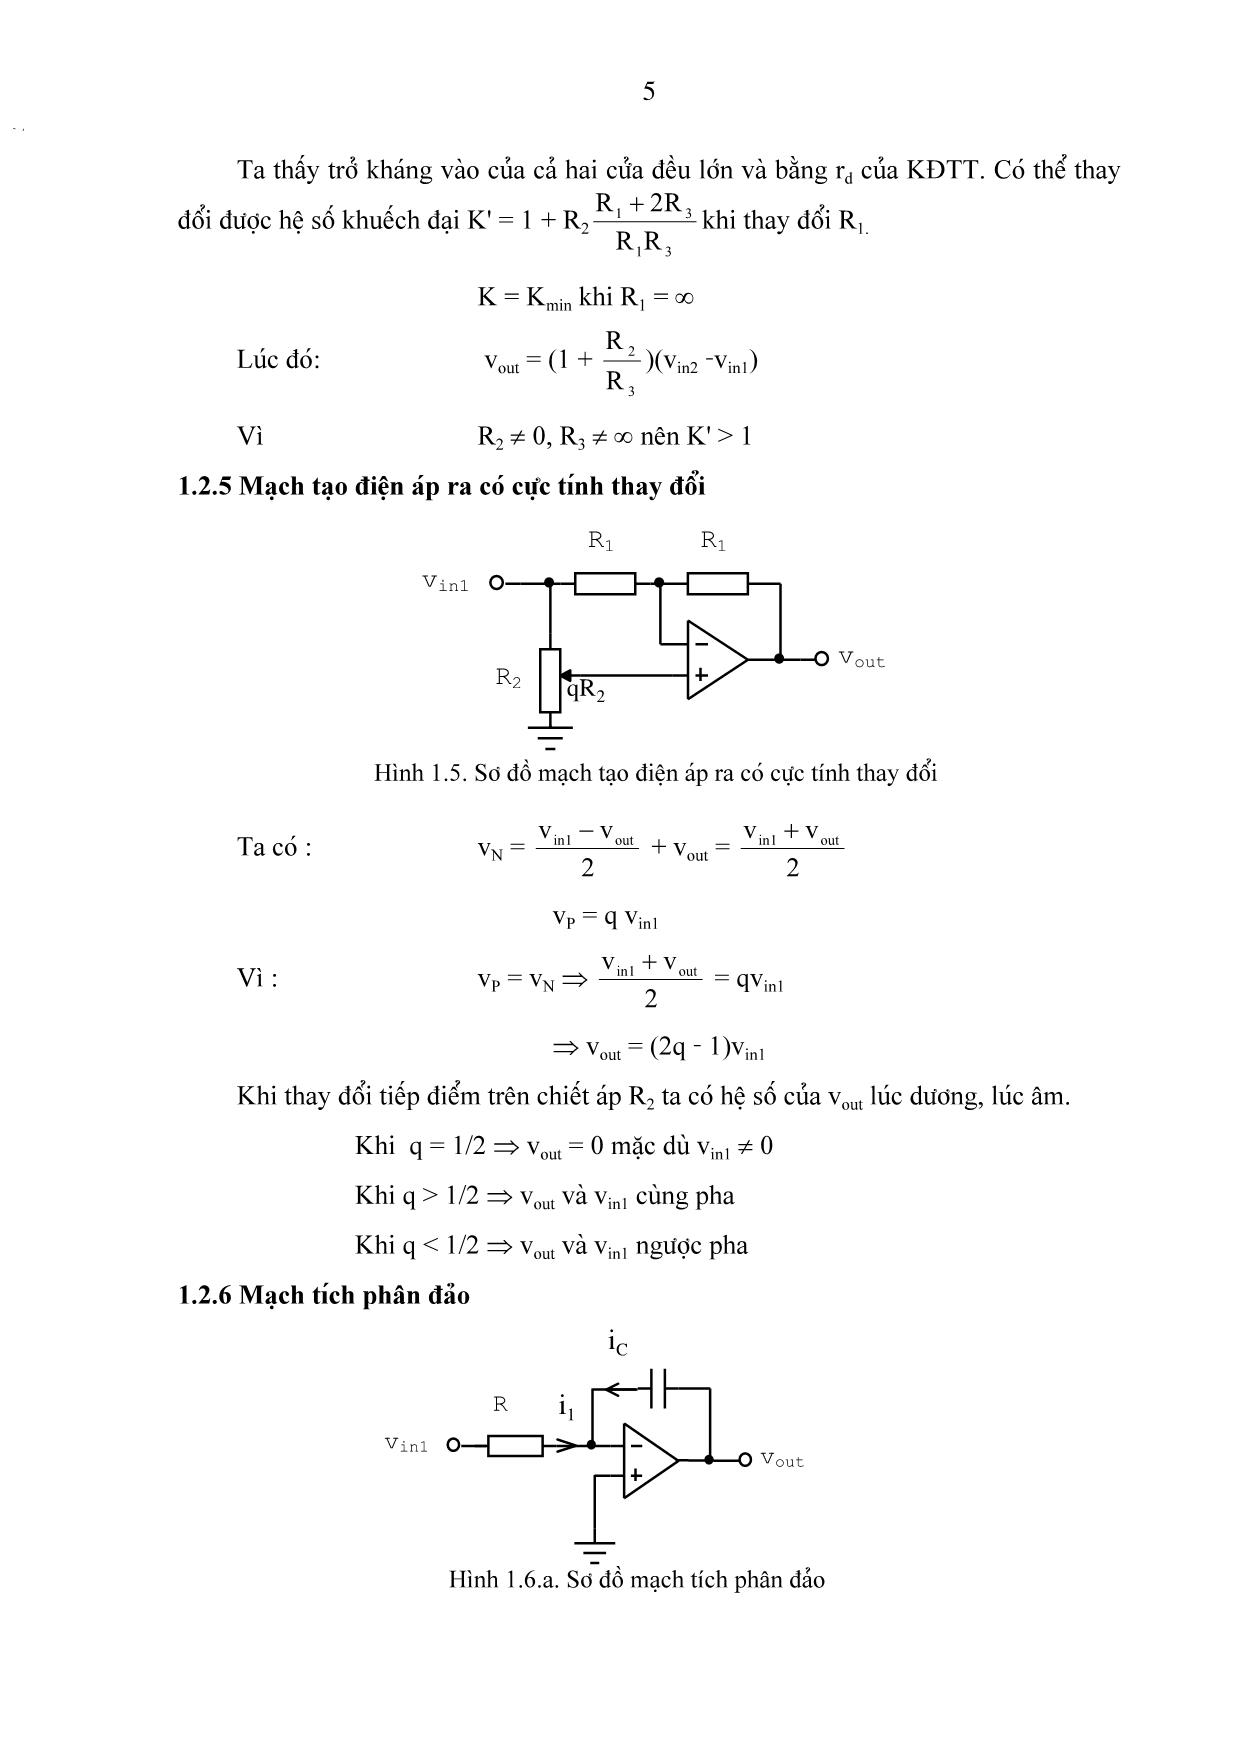 Bài giảng chương 1: Các mạch tính toán, điều khiển và tạo hàm dùng khuếch đại thuật toán trang 5